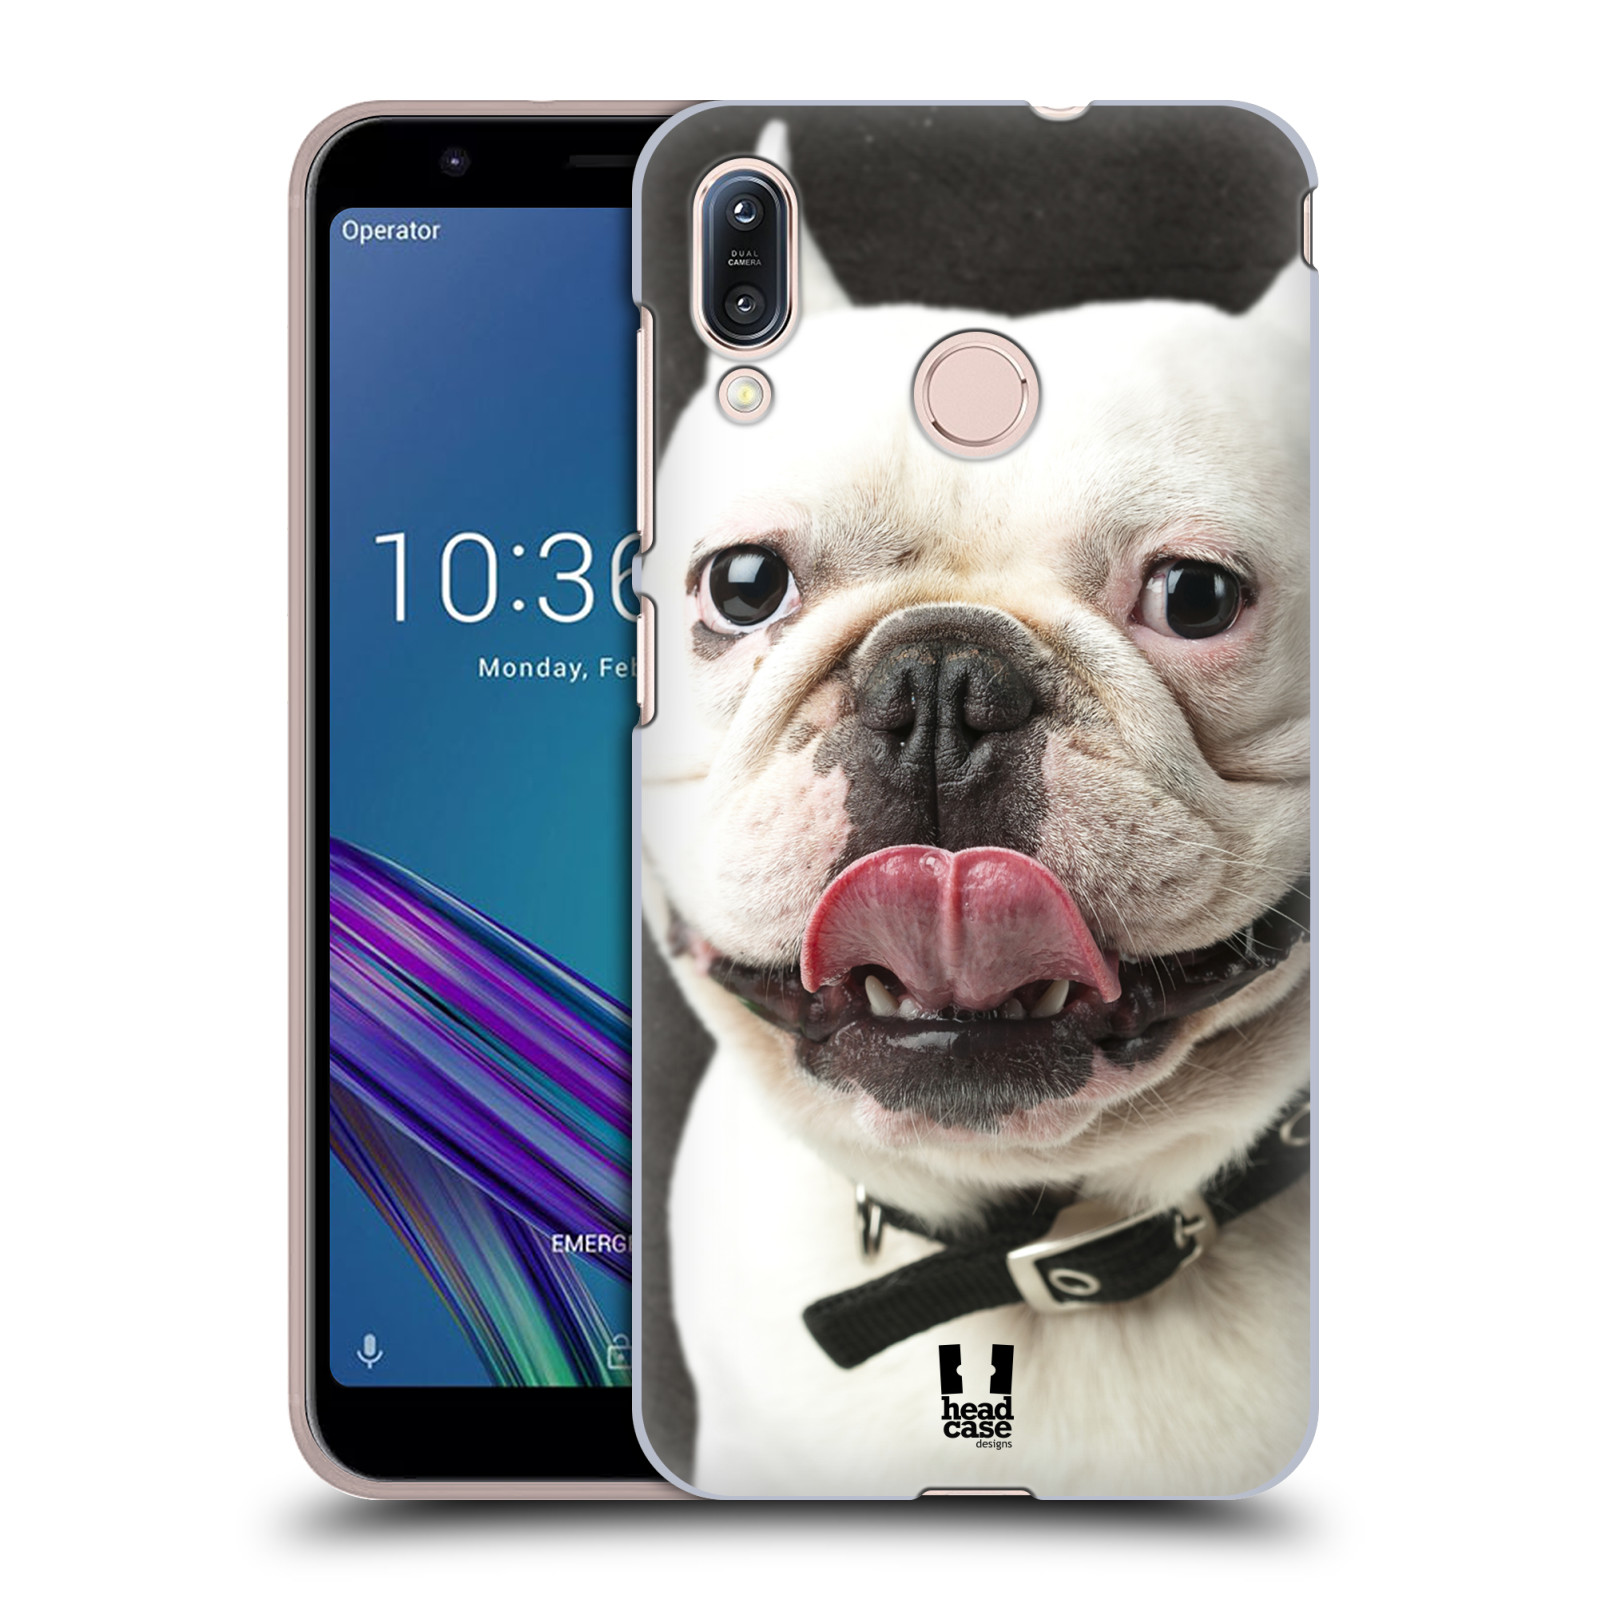 Pouzdro na mobil Asus Zenfone Max M1 (ZB555KL) - HEAD CASE - vzor Legrační zvířátka pejsek s vyplazeným jazykem BULDOK